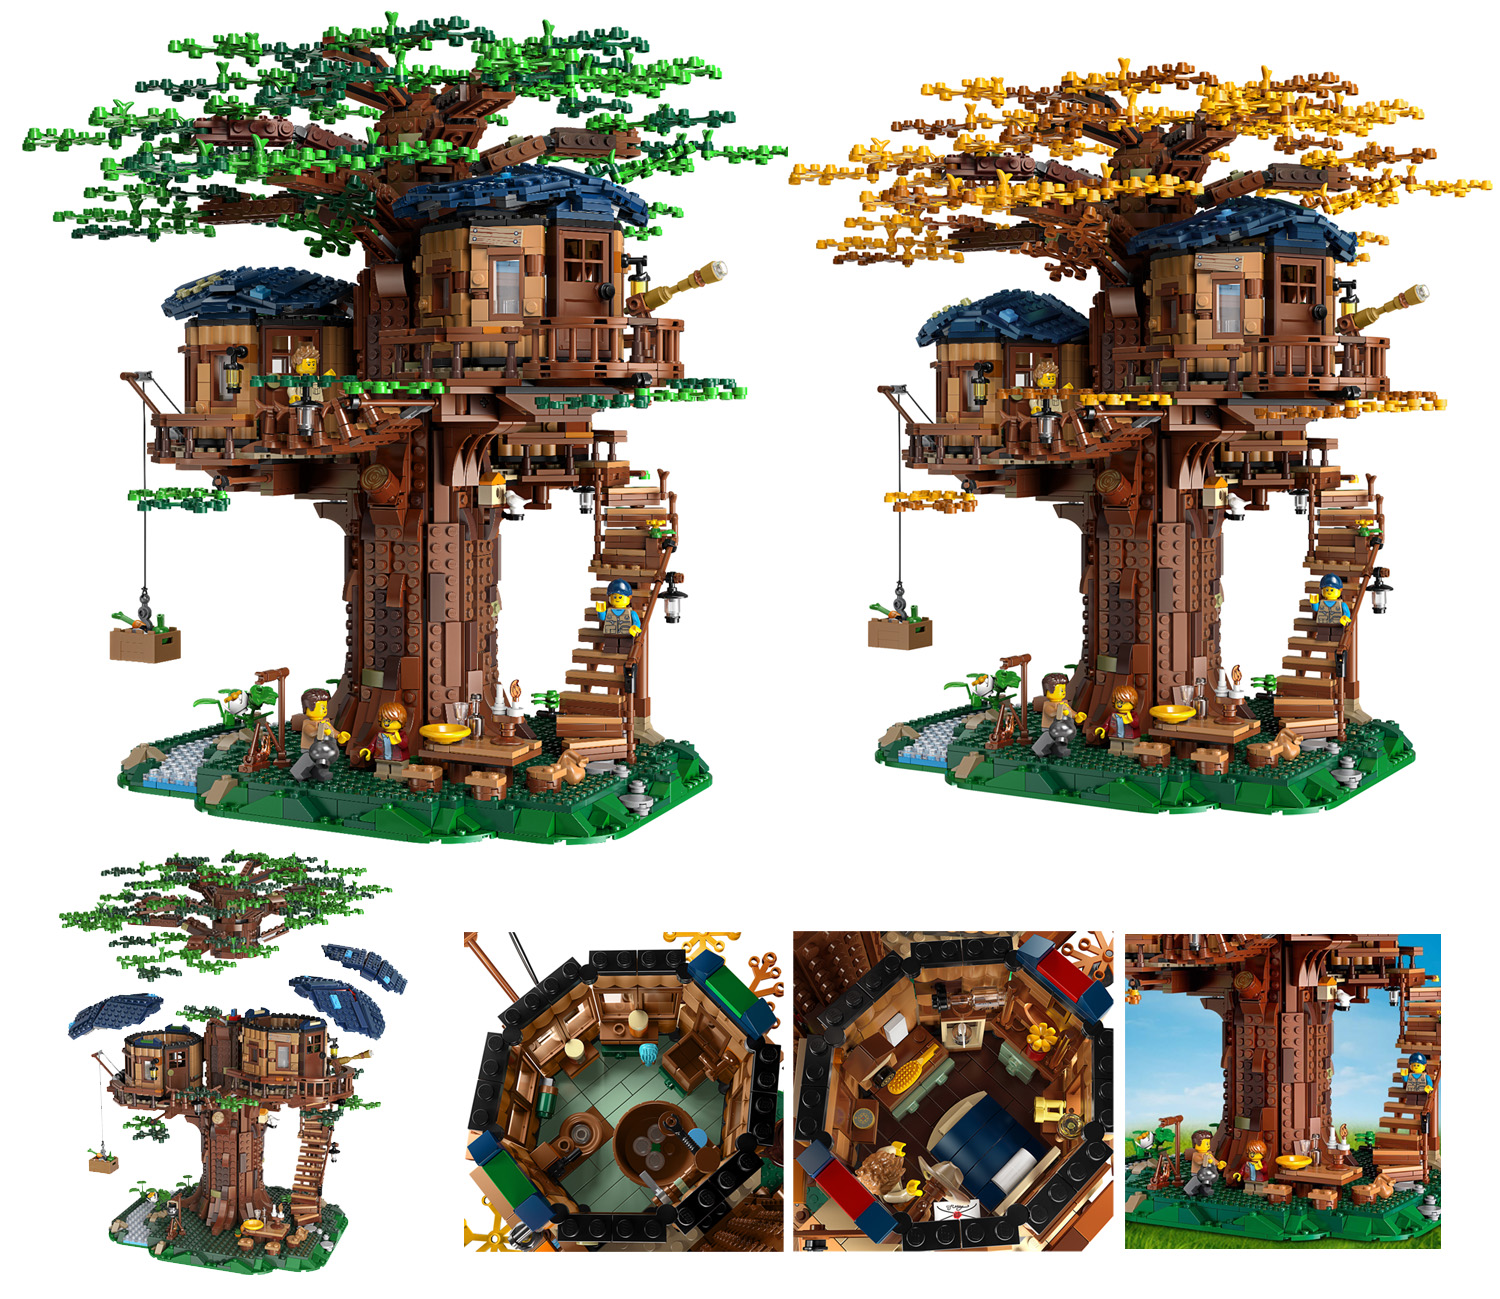 ツリーハウス レゴ Lego アイデア スタッズ レゴの楽しさを伝えるwebメディア